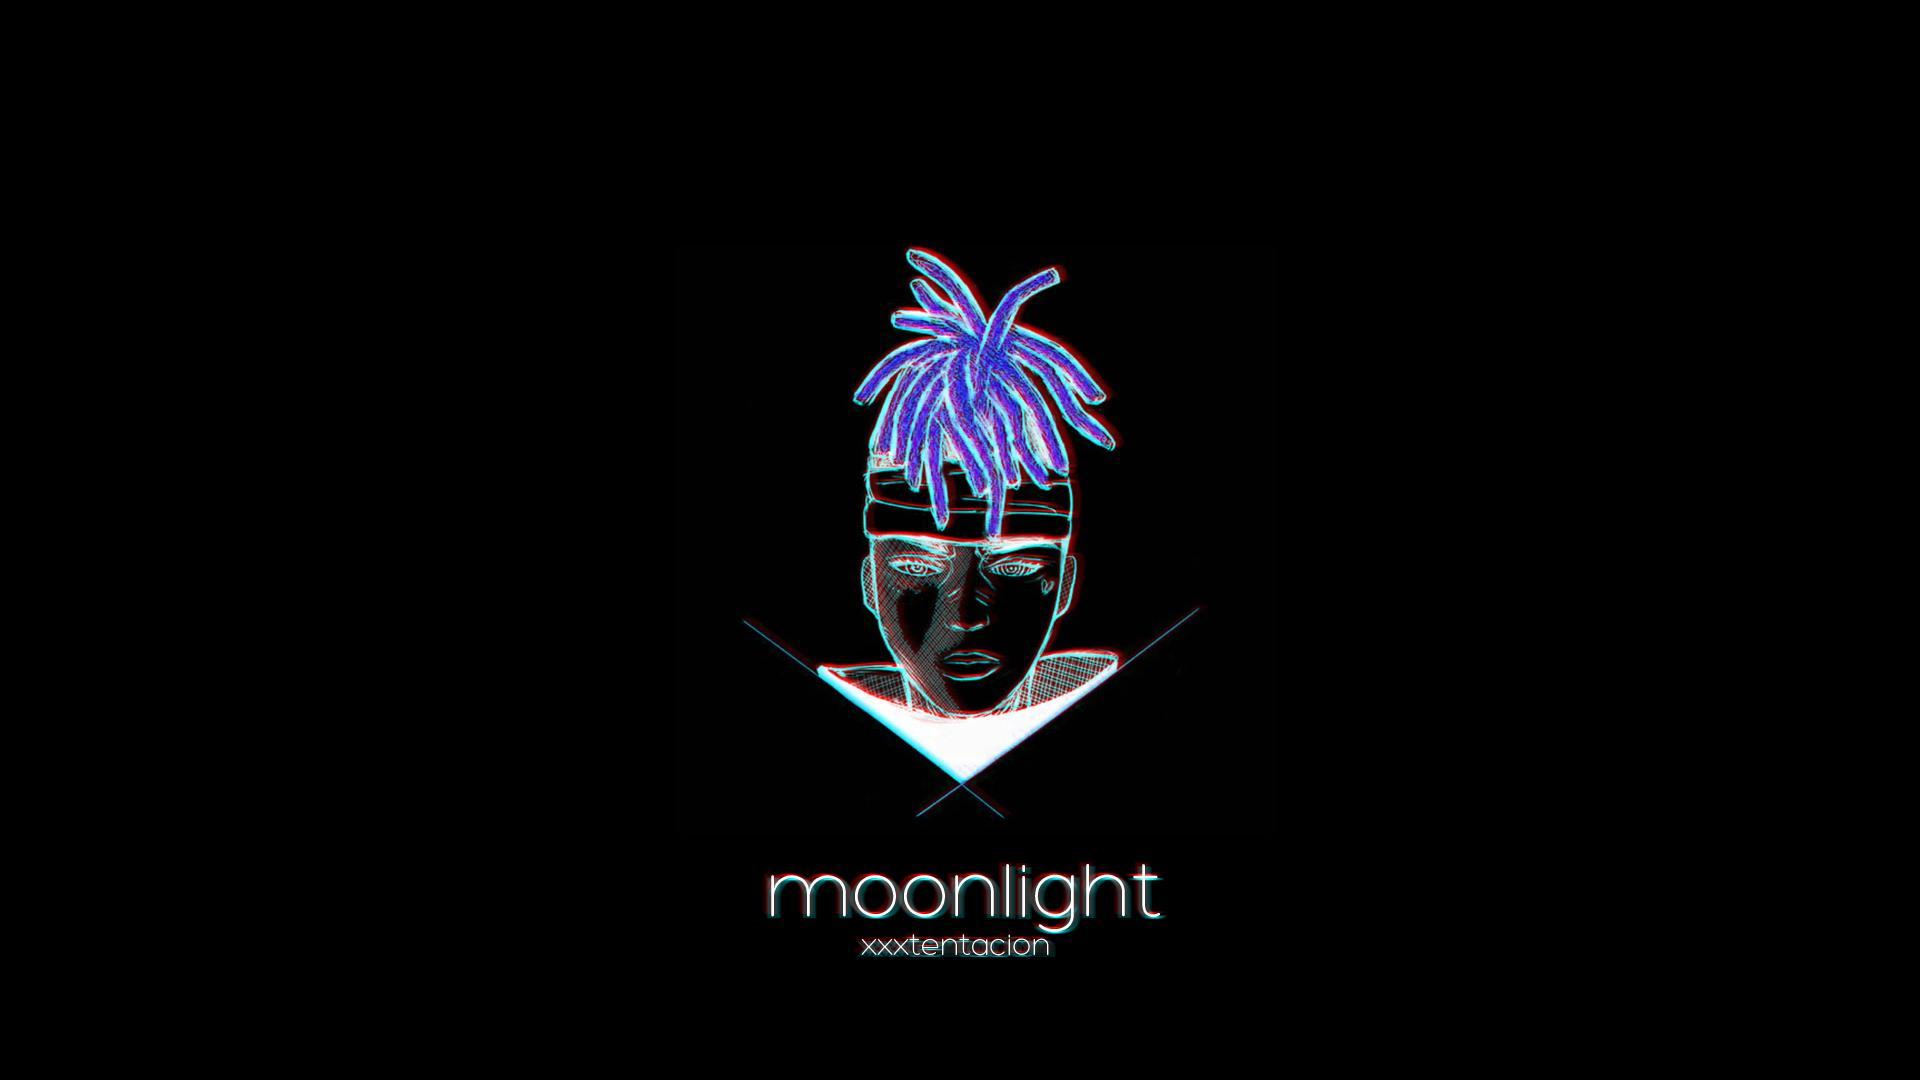 xxxtentacion moonlight video